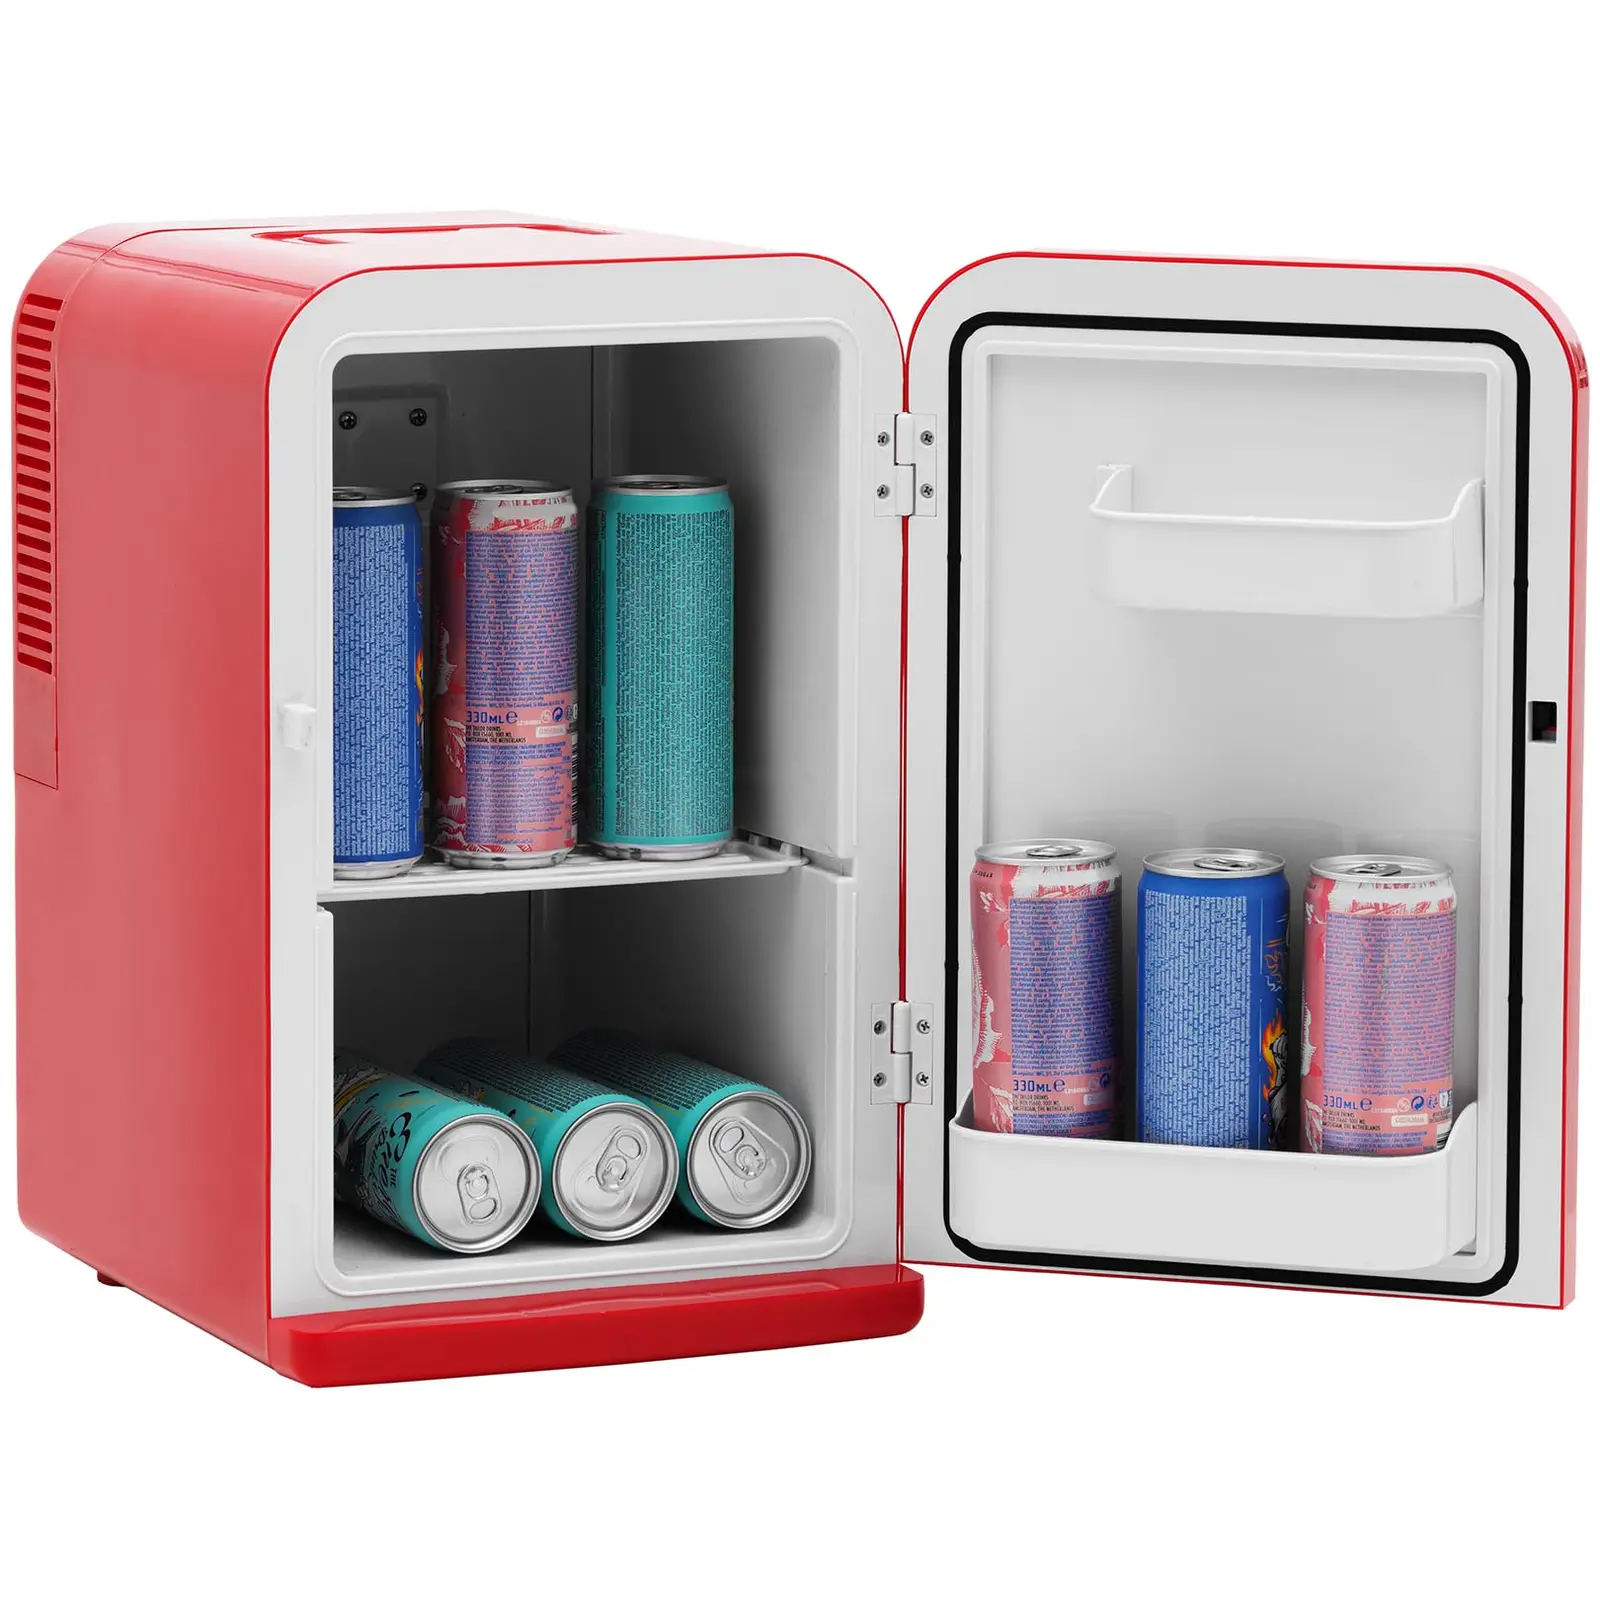 Produtos recondicionados Mini frigorífico para carros 12 V / 230 V - 2 em 1 com função de aquecimento - 15 l - vermelho